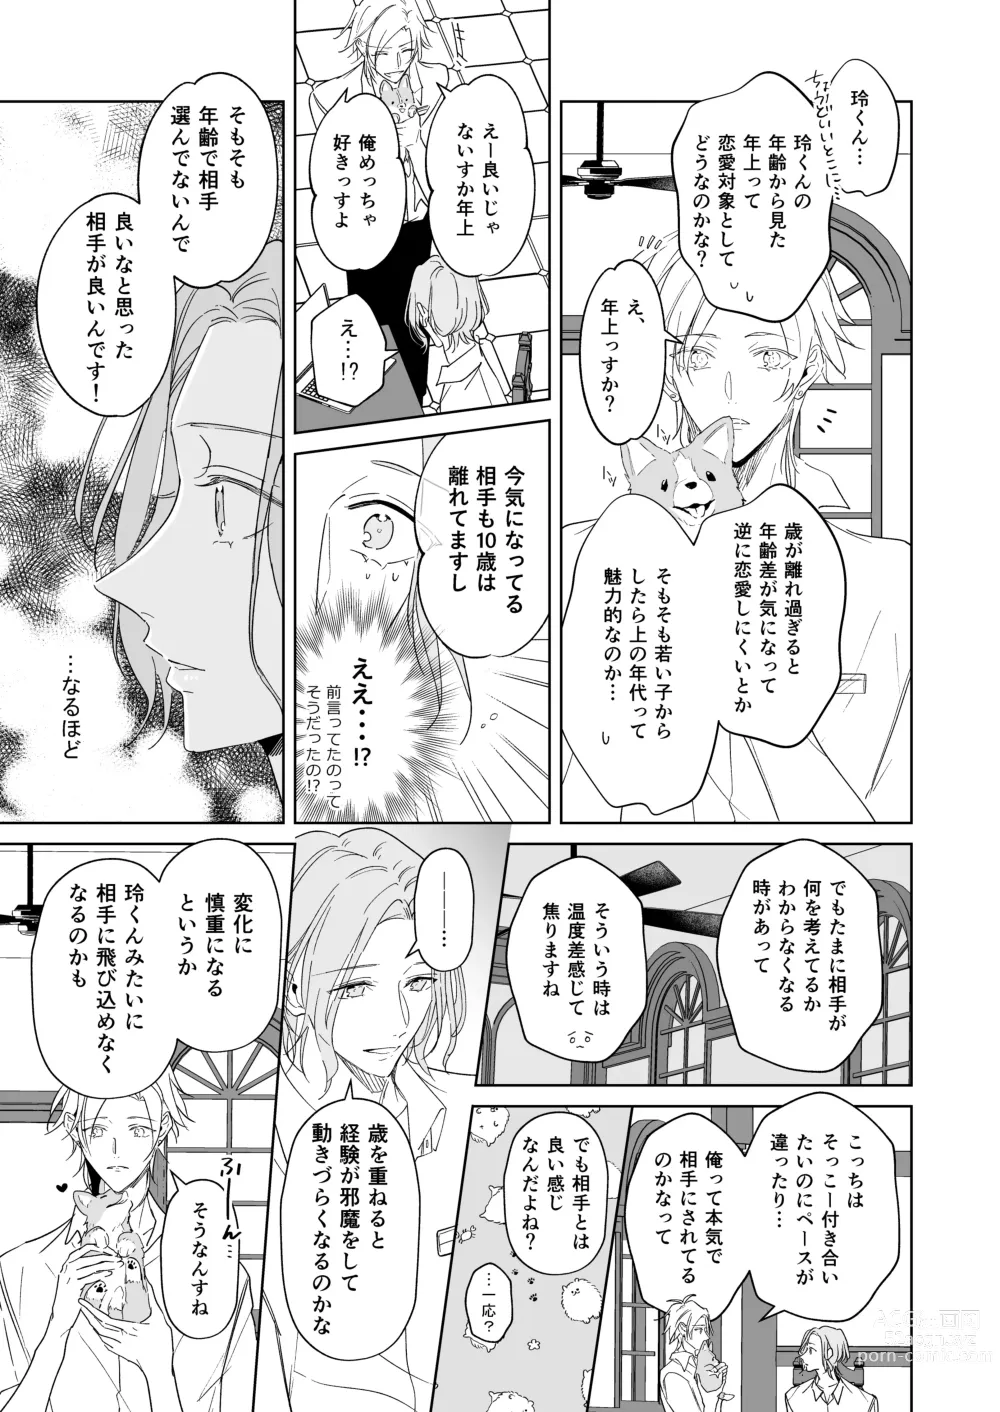 Page 21 of doujinshi Koi wa, Itsu datte